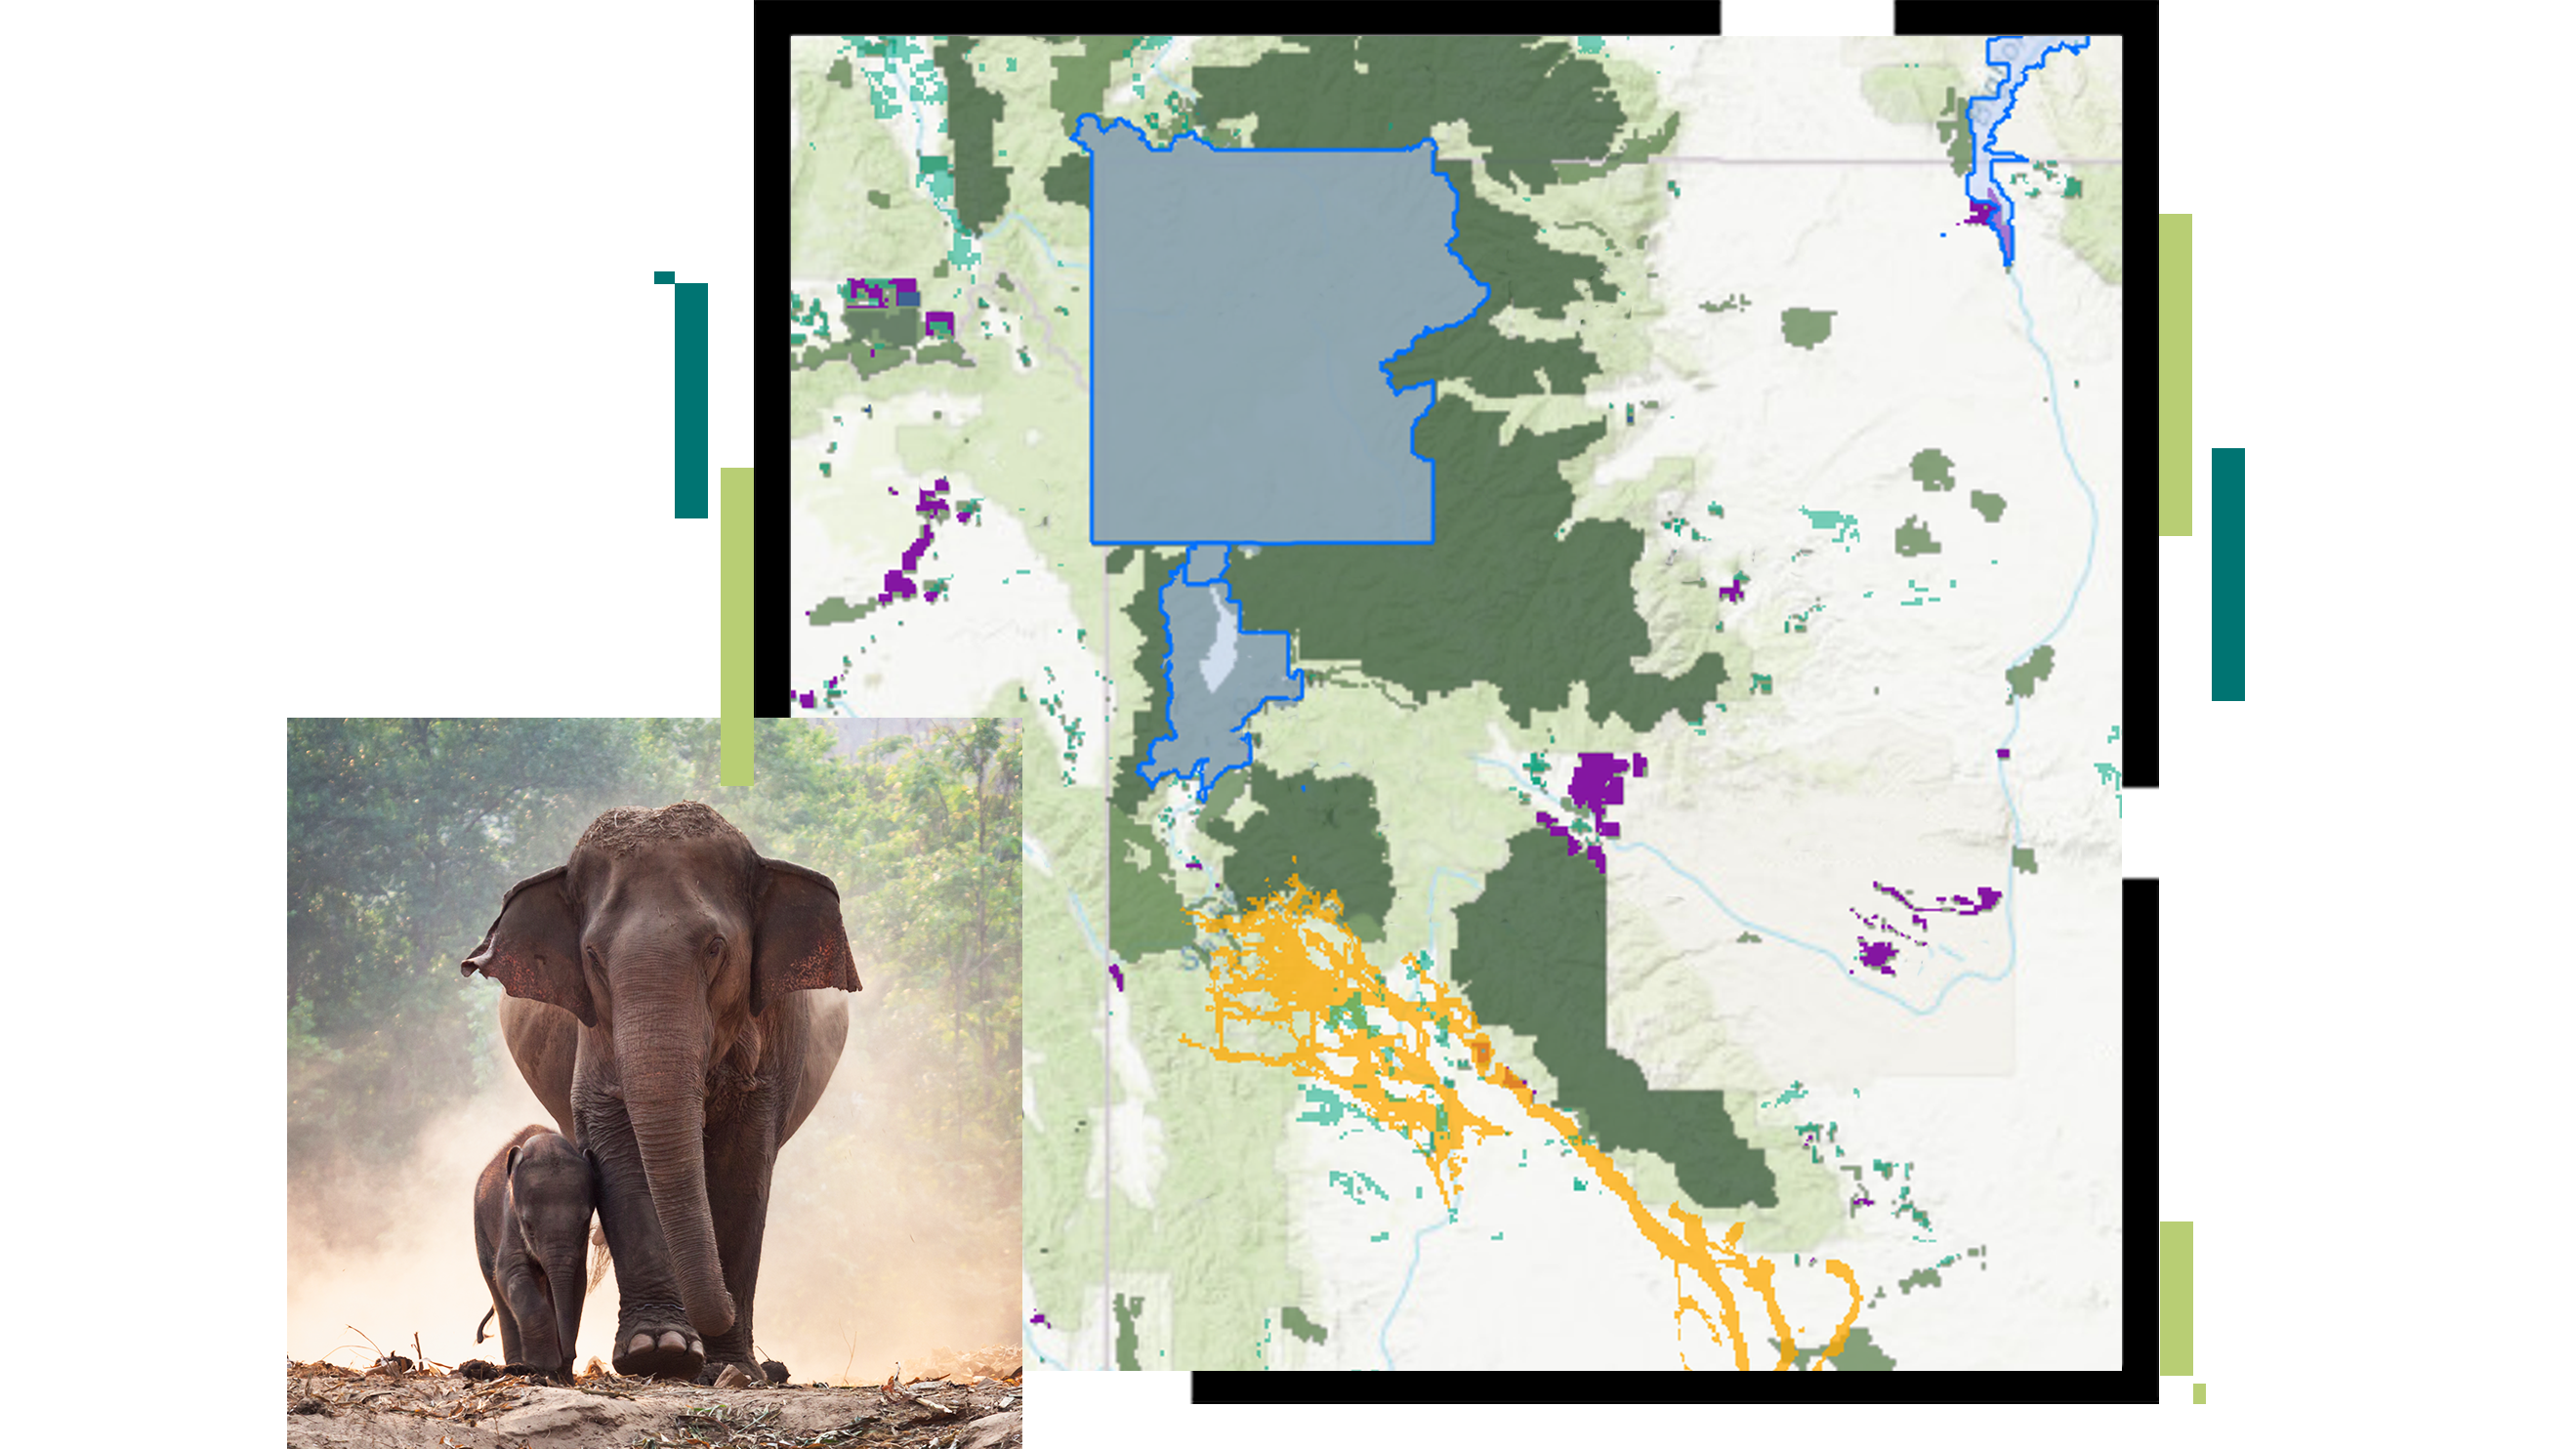 제안된 환경보전지역이 파란색 윤곽선으로 표시된 맵과 어미 코끼리 및 새끼 코끼리 사진이 중첩된 이미지